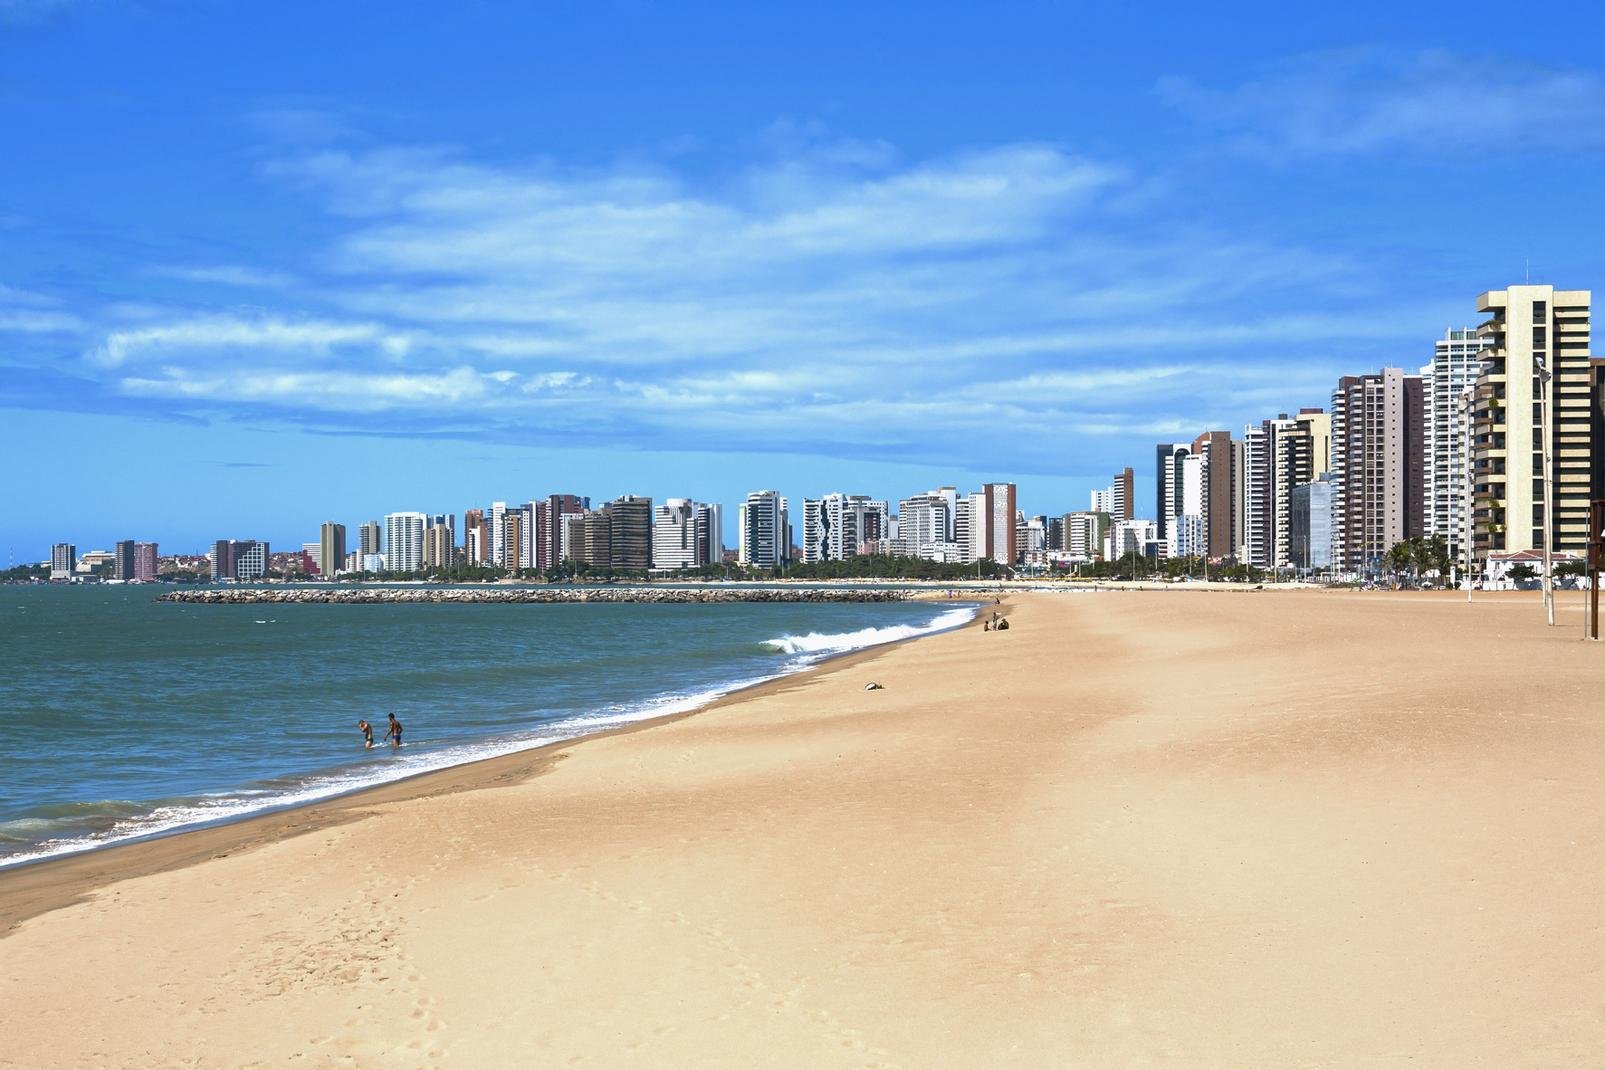 Ville en pleine évolution, Fortaleza est la capitale du Ceará, l'un des états brésiliens qui constituent la région du nord-est, connue pour ses paysages de dunes, ses plages et le carnaval de Bahia. Ceux qui ont eu la chance de la visiter il y a une trentaine d'années se rappelleront - peut-être avec nostalgie - la myriade de petites maisons typiques, colorées et romantiques, de cette commune consacrée ...